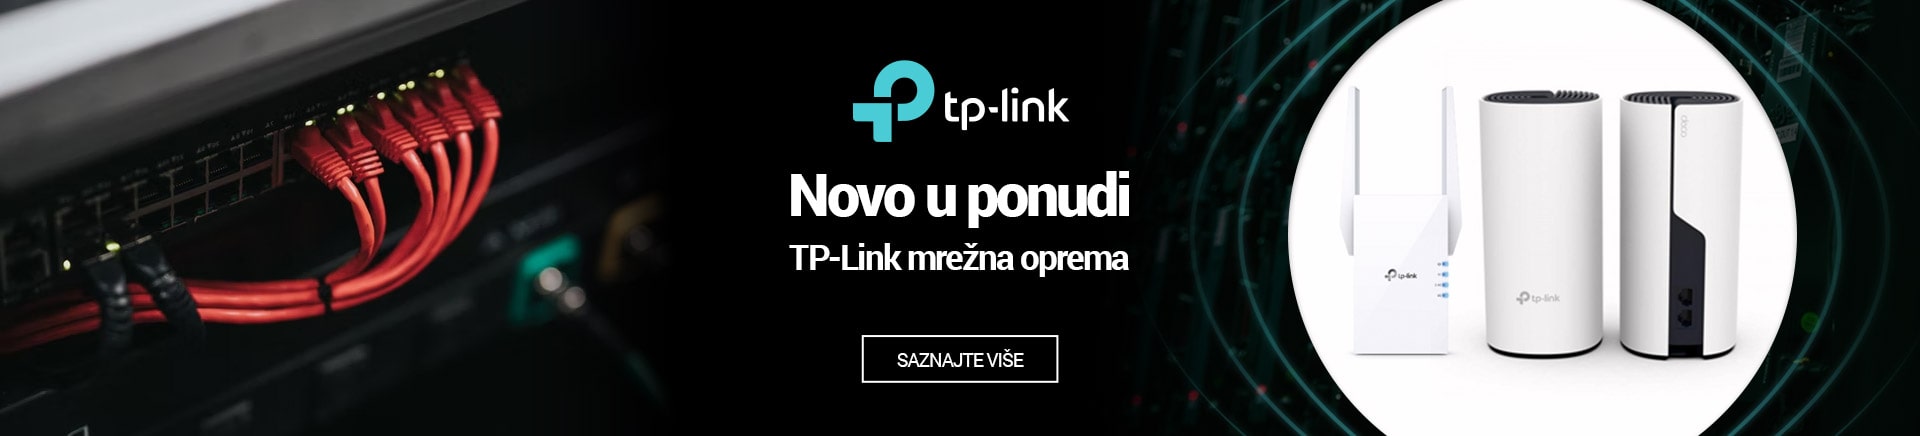 TP-Link mrežna oprema novo u ponudi